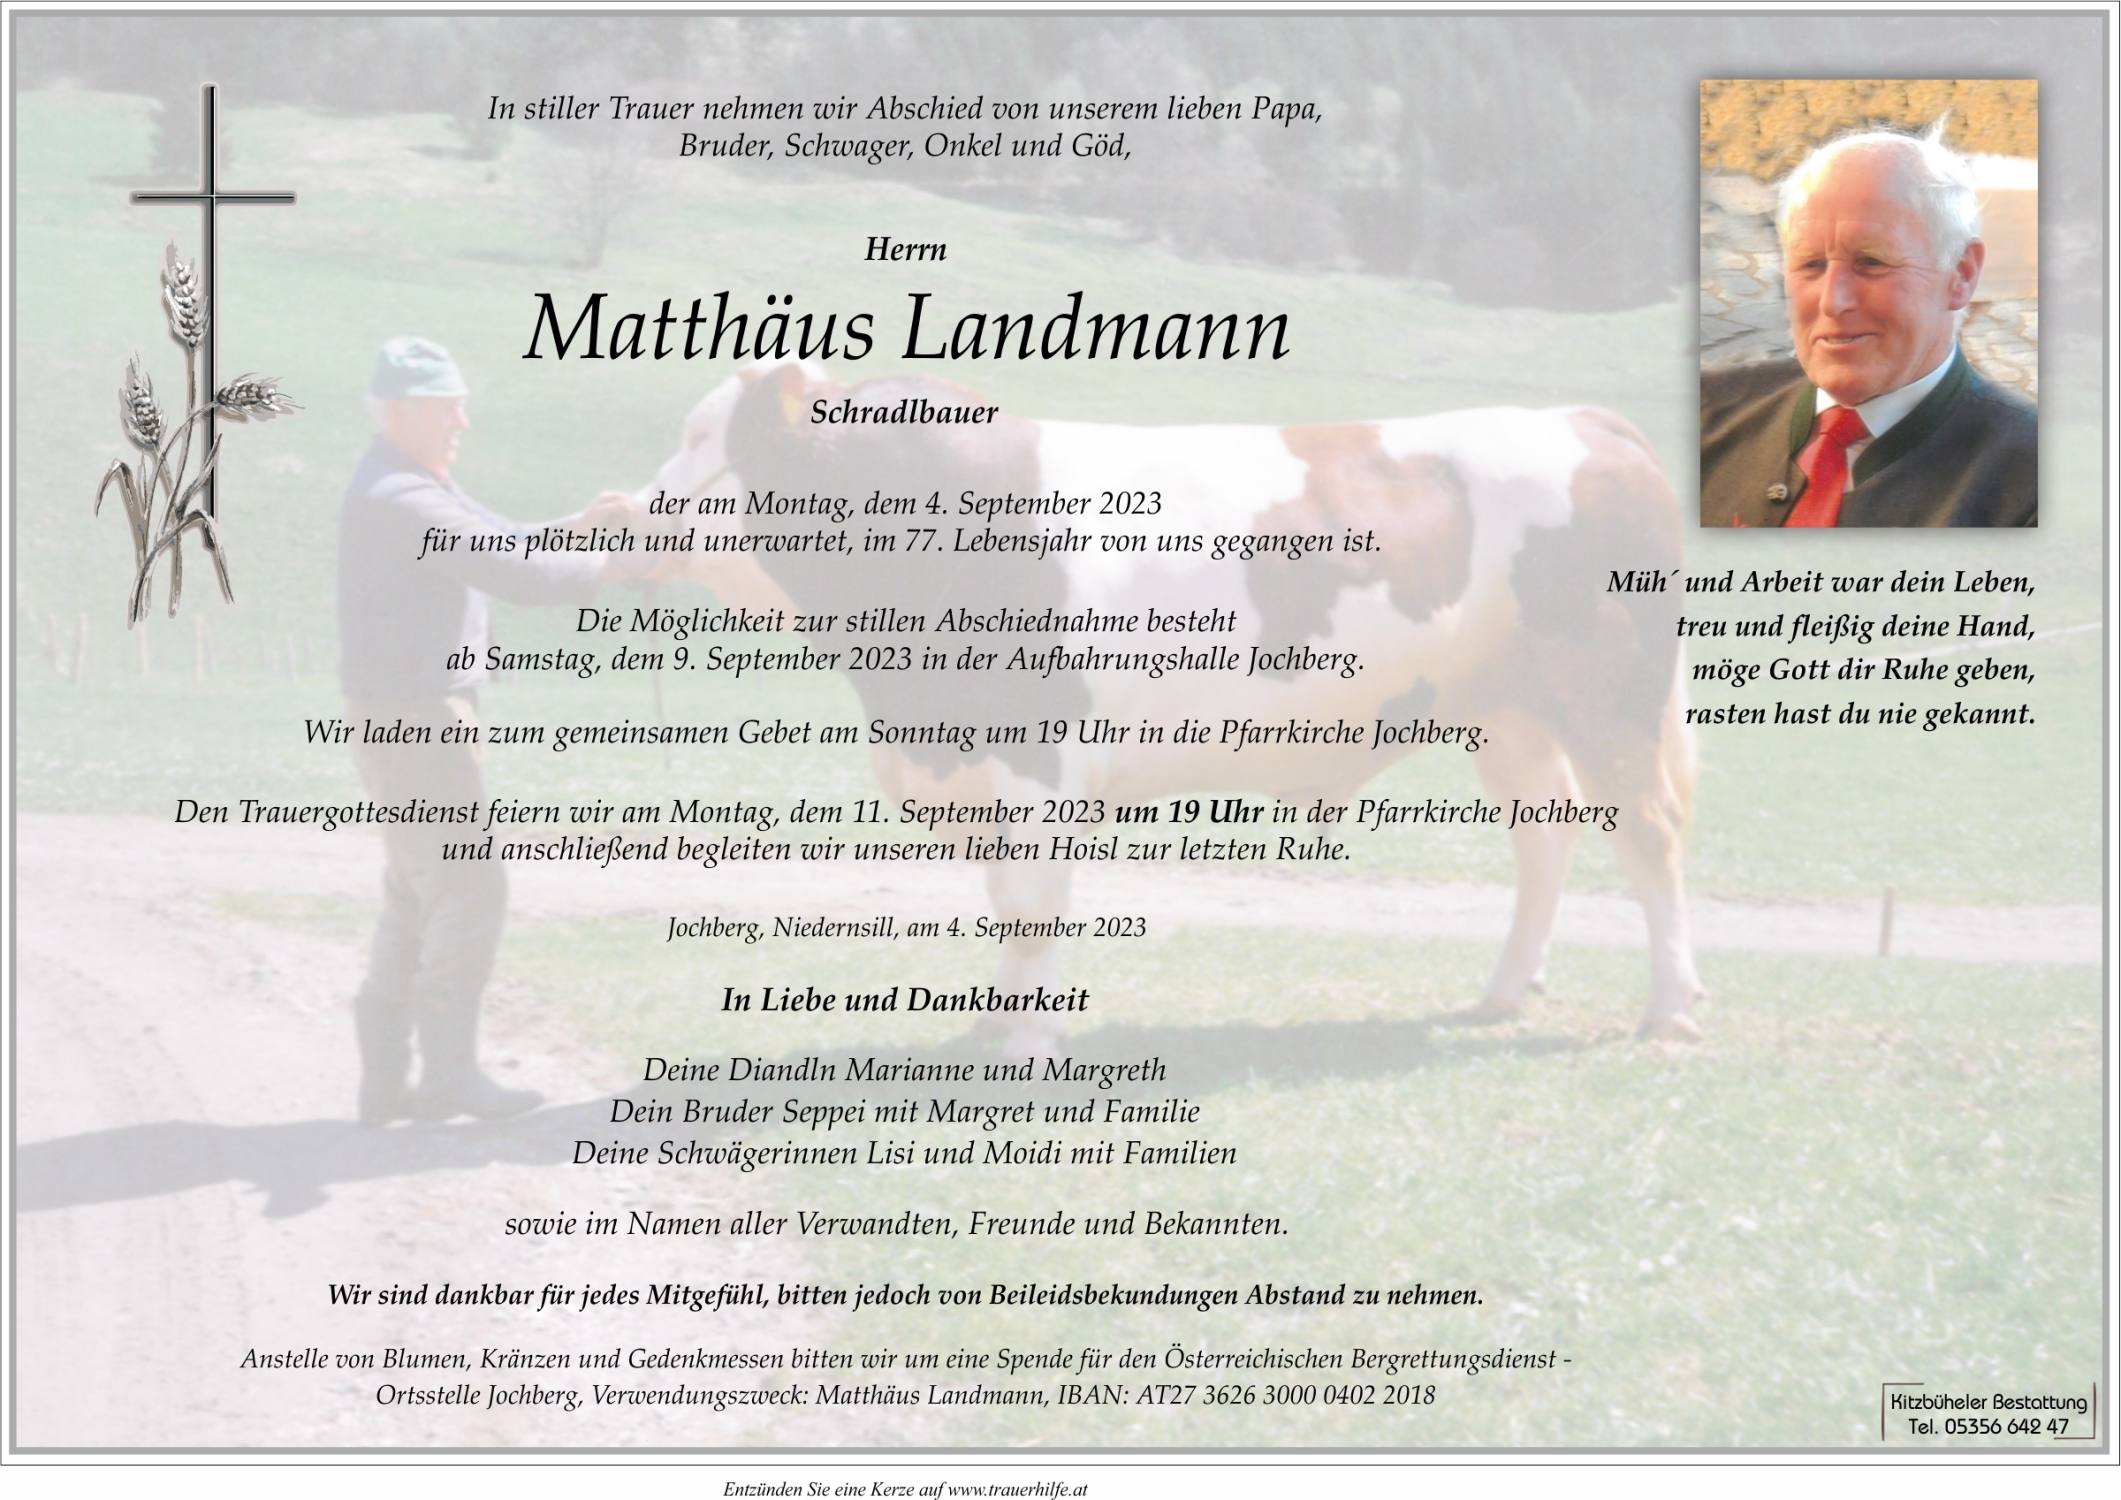 Matthäus Landmann